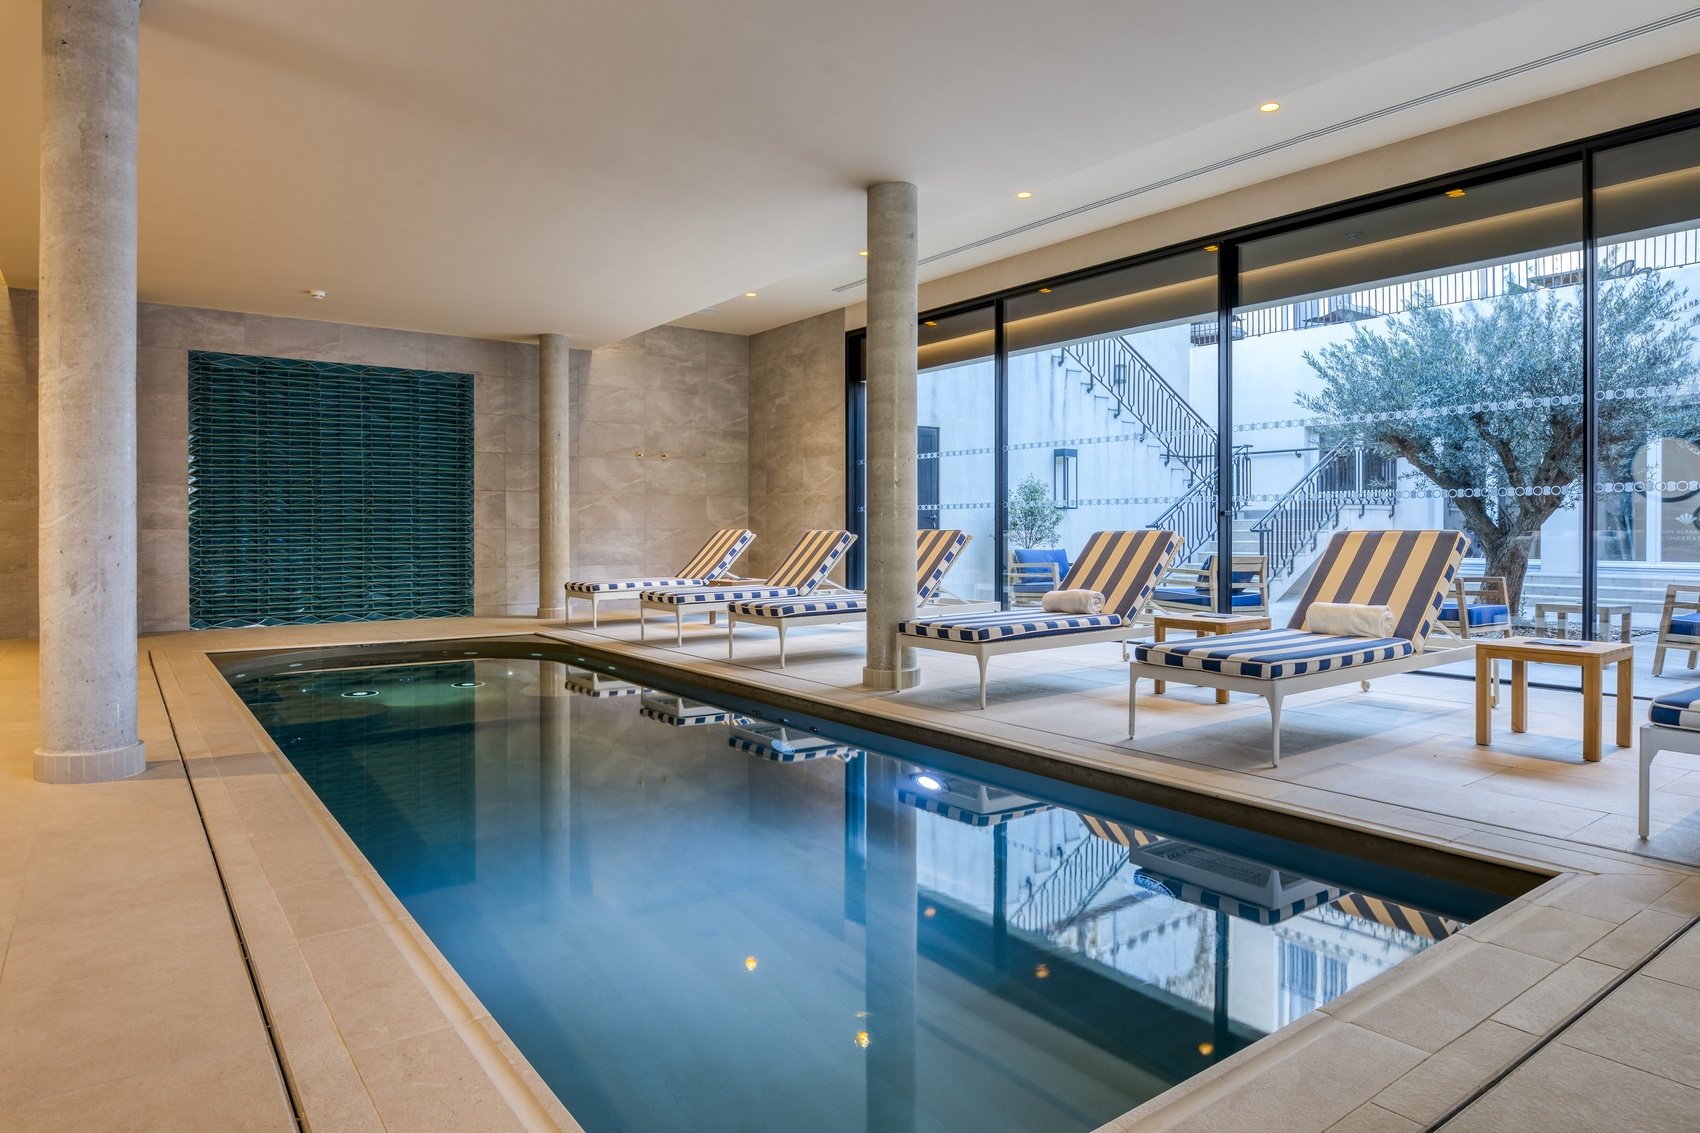 Meilleur boutique hôtel design Nîmes Maison Albar Hotel L'Imperator 5* piscine spa Codage